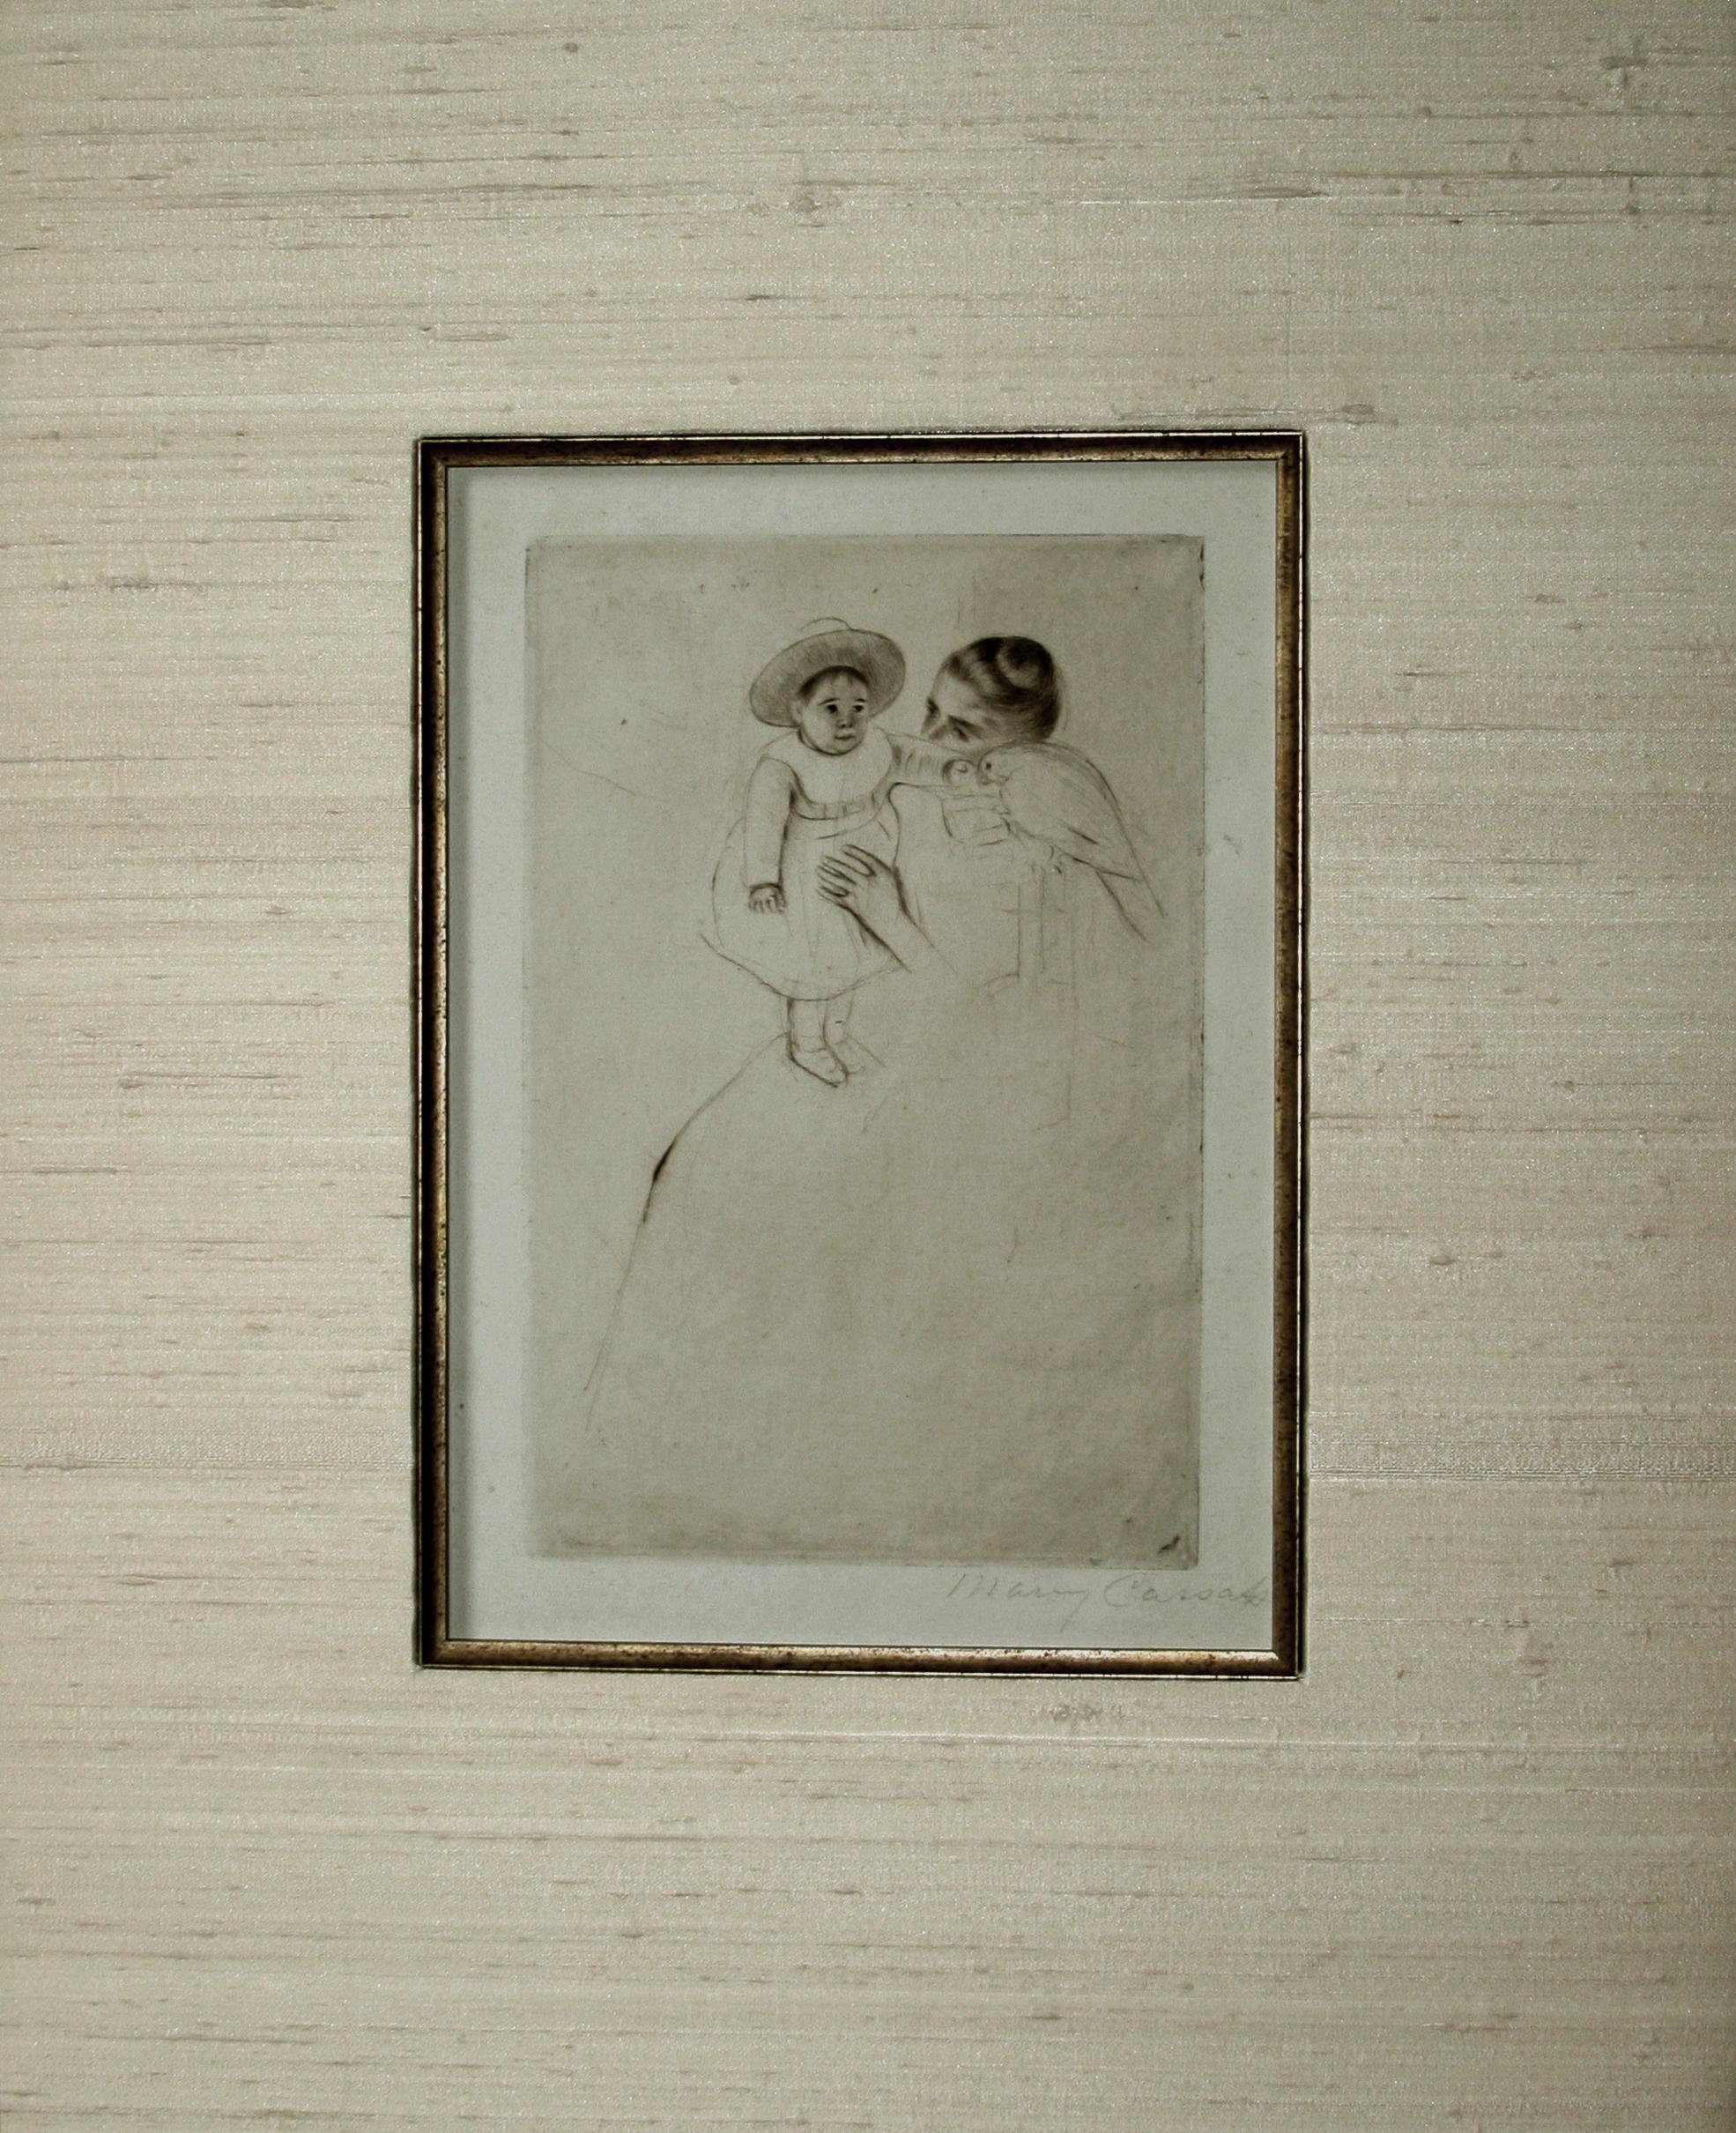 Hélène of Septeuil (enfant au perroquet) (child with a parakeet). - Print by Mary Cassatt